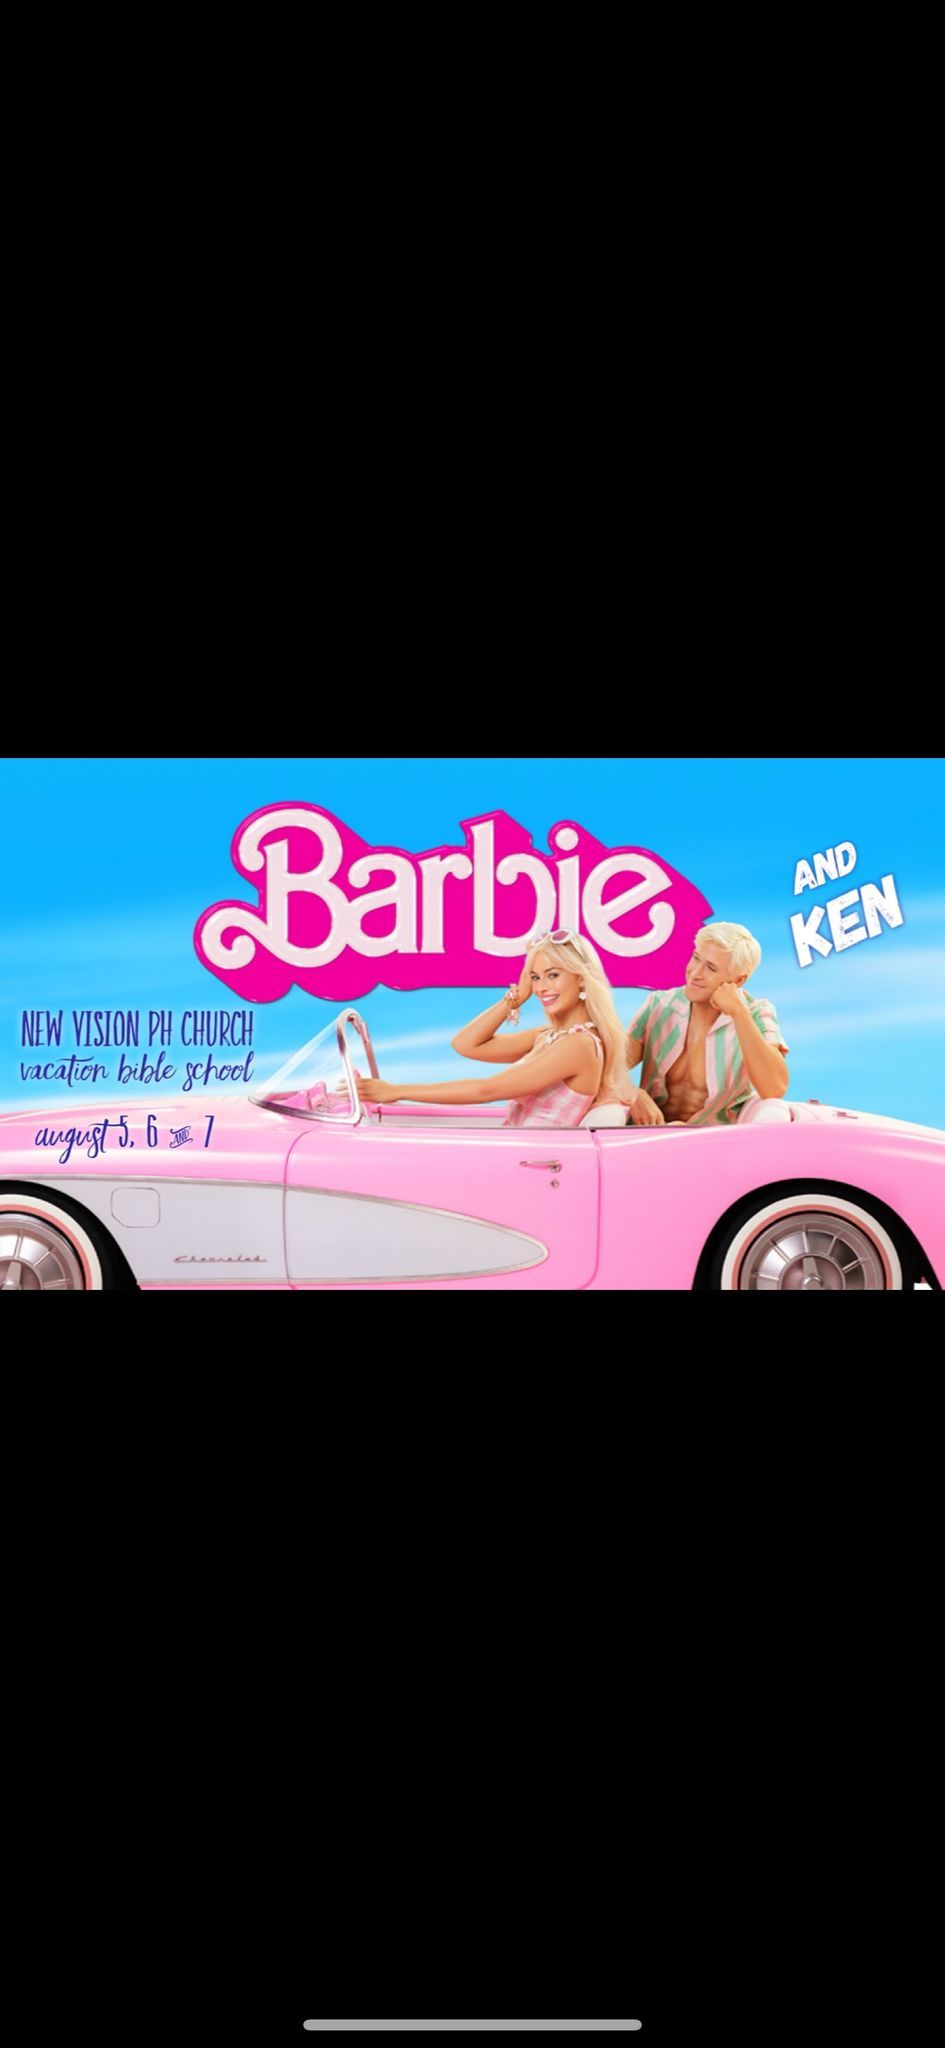 Barbie and Ken Vacation Bible School